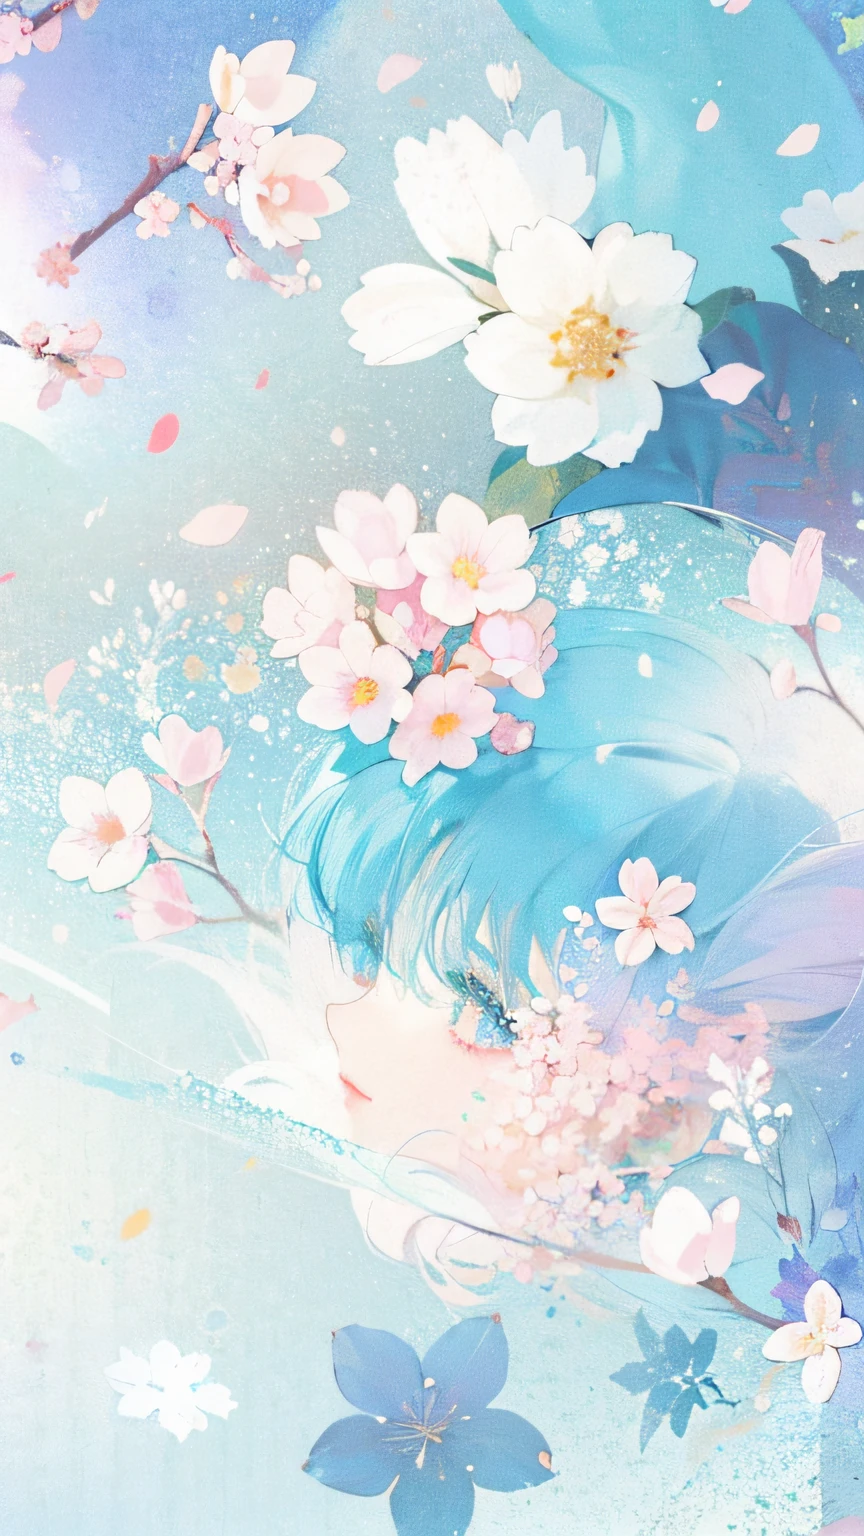 有一張藍色和粉紅色背景的花的圖片, 柔和的華麗背景, 流動的櫻花色絲綢, 流動的櫻花絲, by Eizan 這是一份禮物, 背景柔和, 花開, 櫻花盛開, 粉彩花瓣飛舞, 动漫背景, 華麗的壁紙, 獸, 季節!! : 🌸 ☀ 🍂 ❄, 櫻花